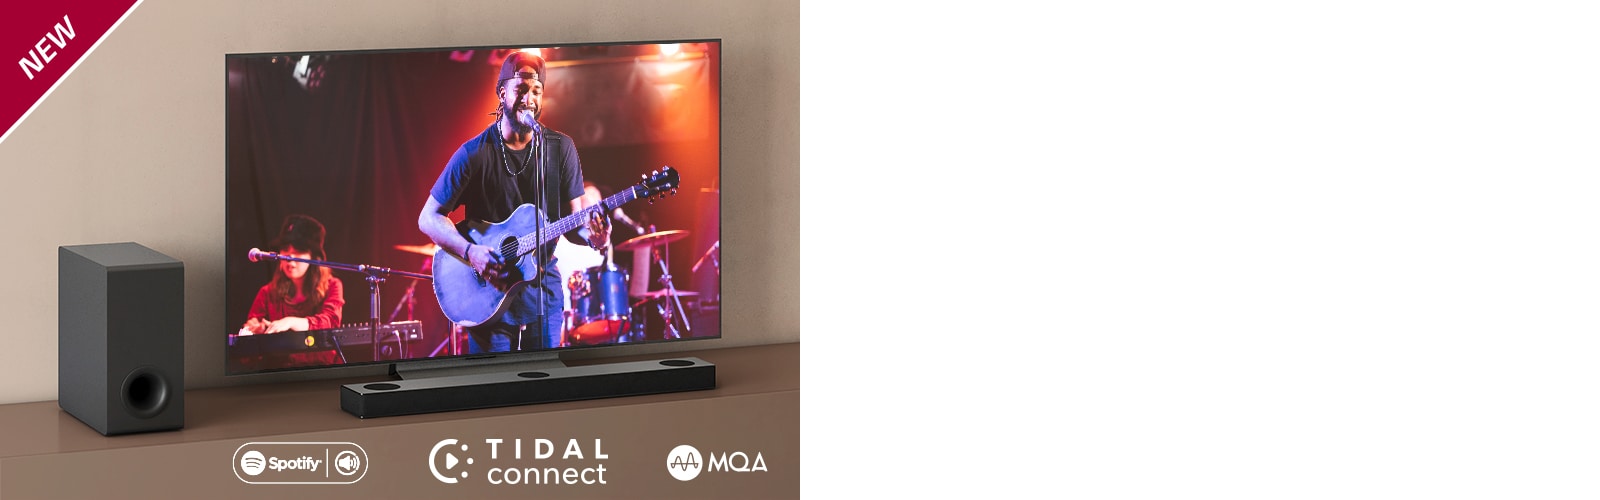 LG televizorius padėtas ant rudos lentynos, o „LG Sound Bar S80QY“ – priešais televizorių. Žemųjų dažnių garsiakalbis yra kairėje televizoriaus pusėje. Televizoriuje rodoma koncerto scena. Viršutiniame kairiajame kampe parodytas ženklas NEW.